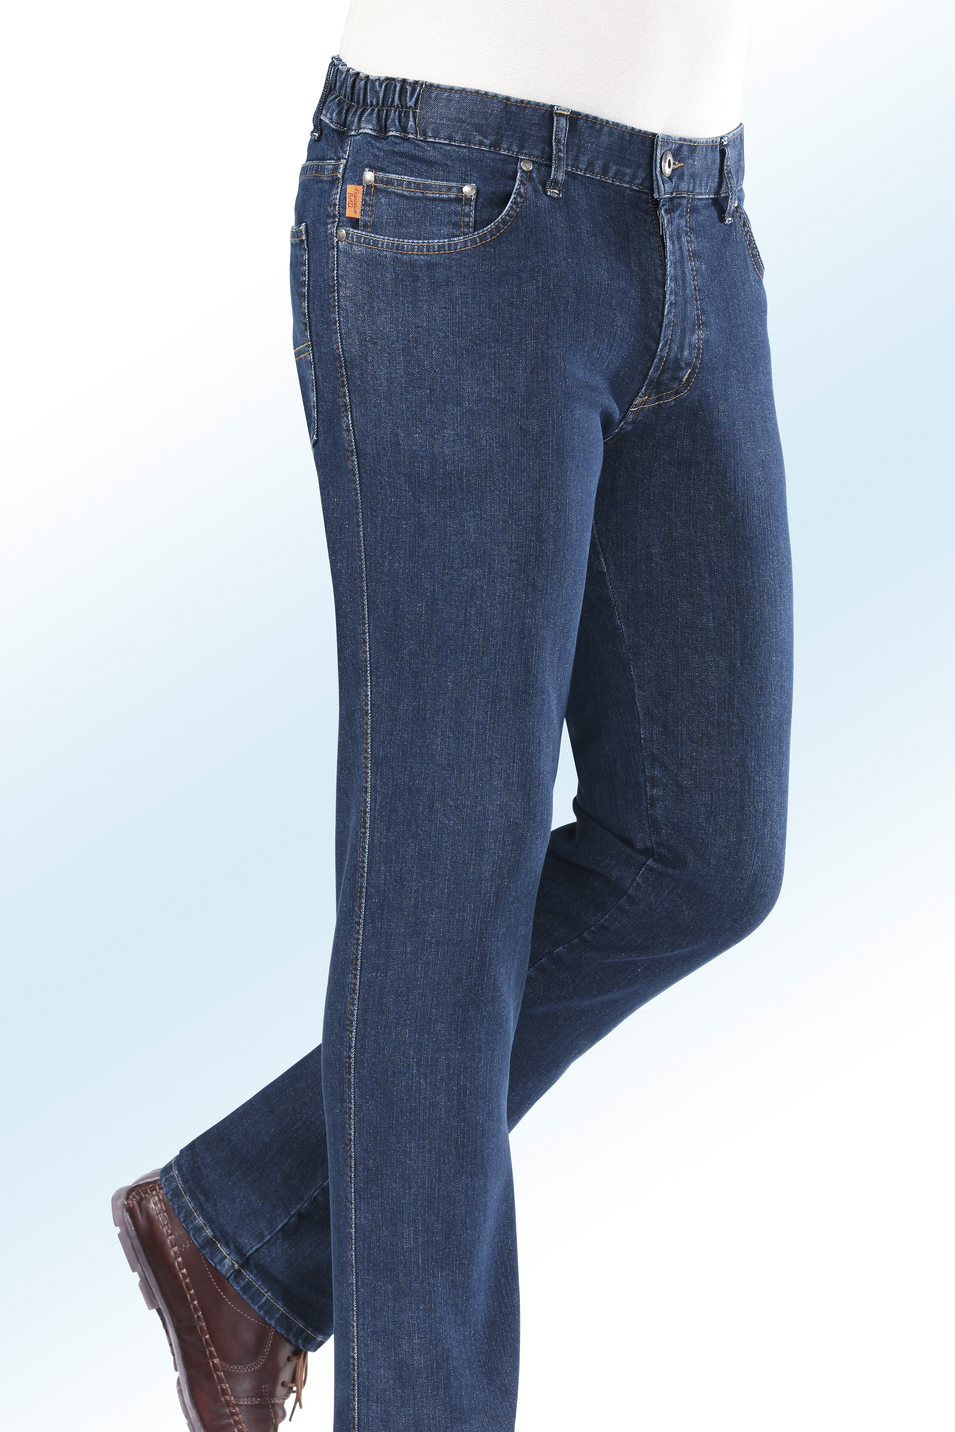 "Francesco Botti"-Jeans mit Dehnbundeinsätzen in 3 Farben, Jeansblau, Größe 60 von FRANCESCO BOTTI